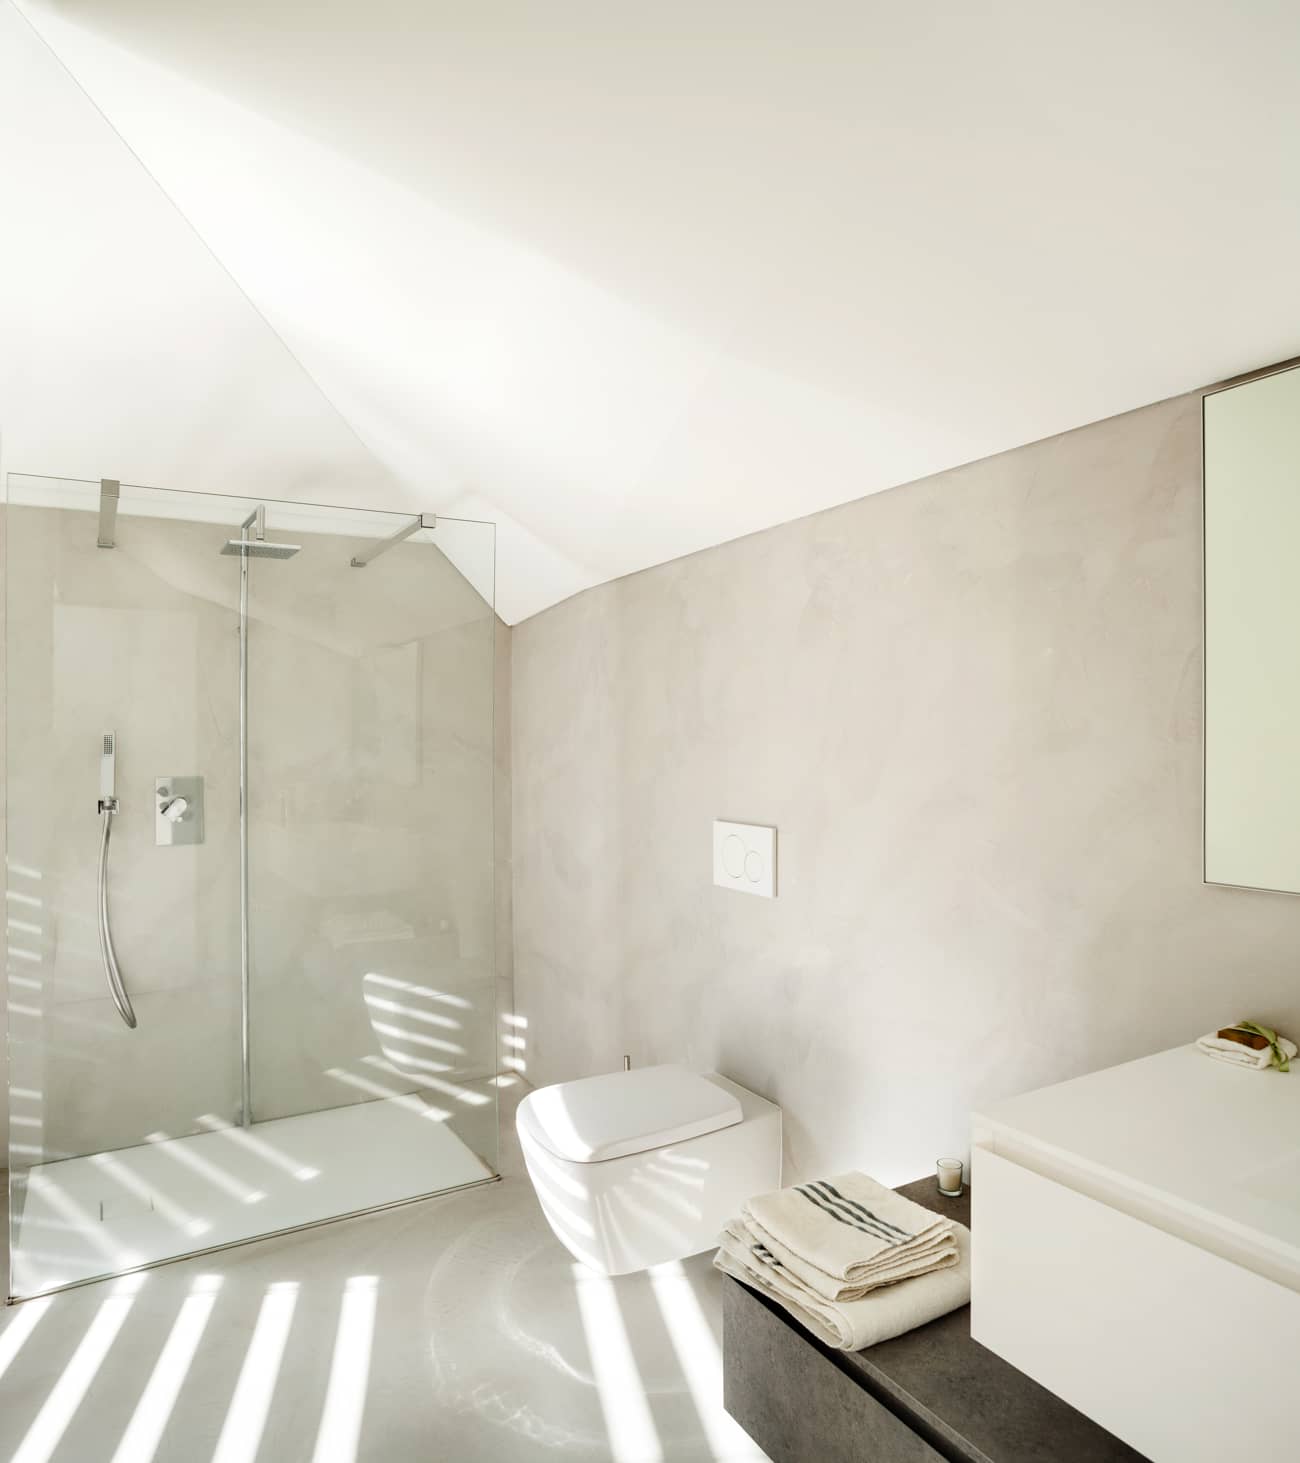 Badkamer ingericht met microcement in het algemeen